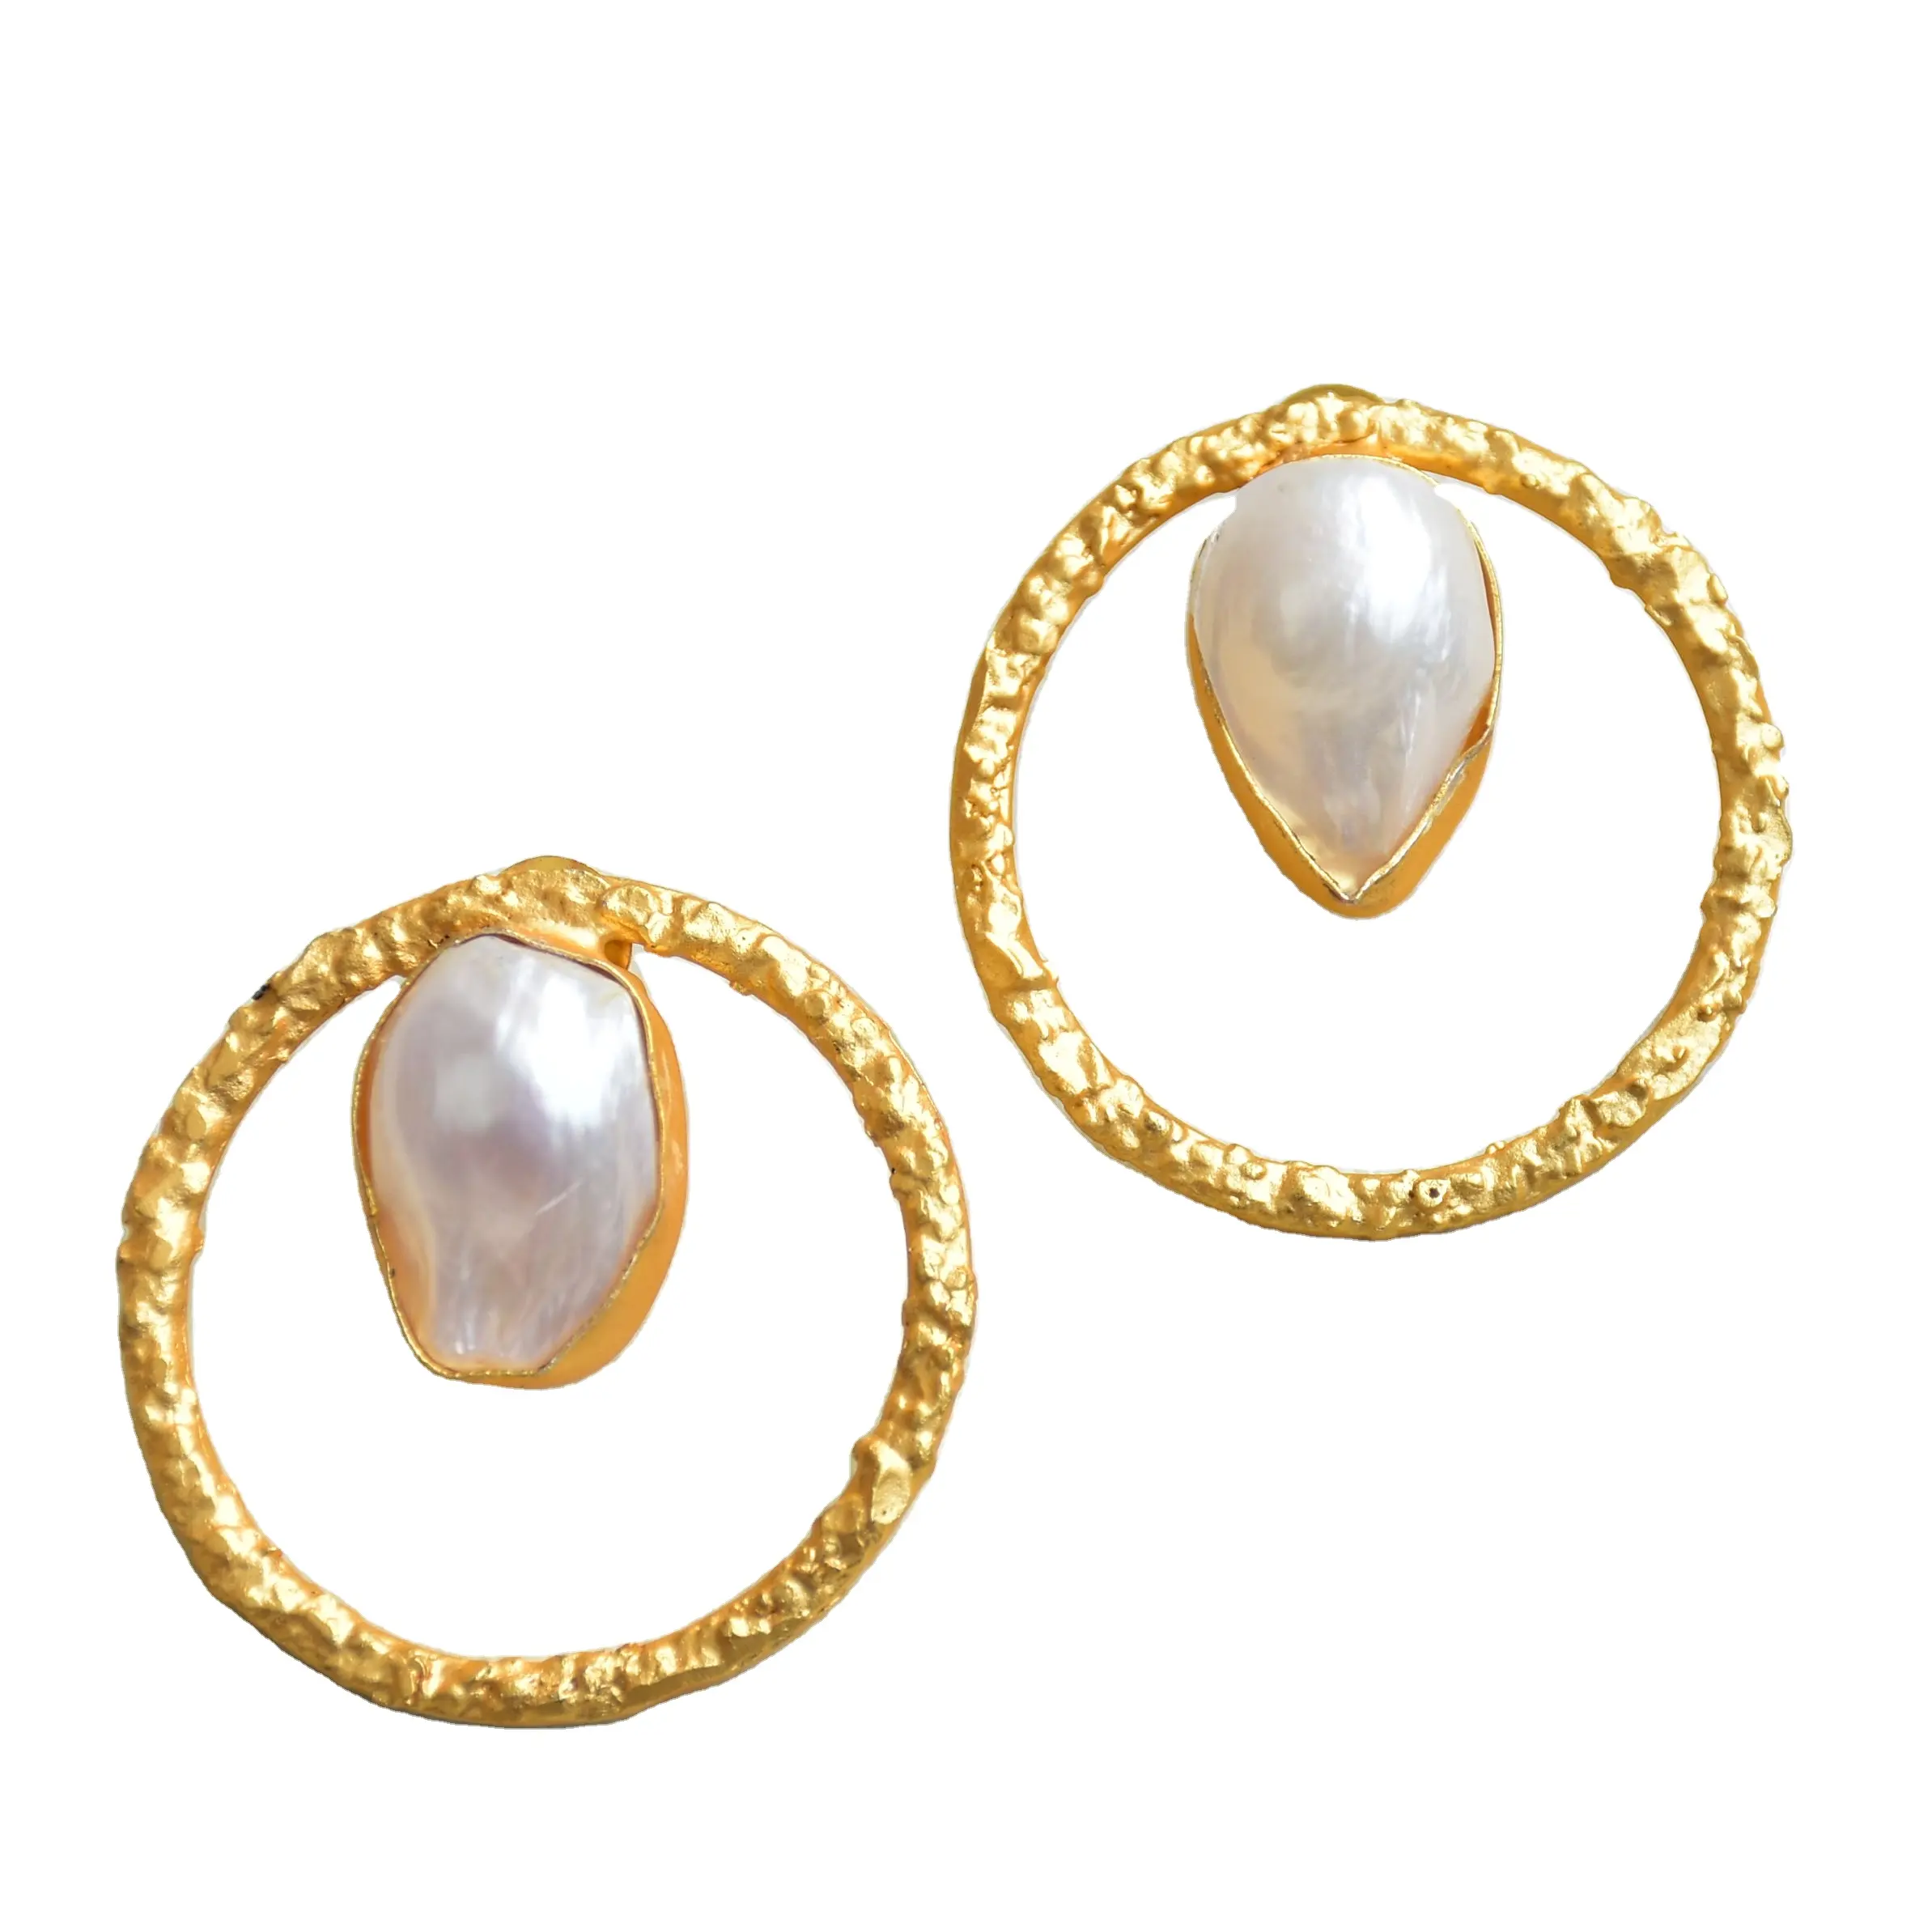 Perle einzigartige hand gefertigte Ohrringe Natürliche Süßwasser perle runde Ohr stecker Vergoldete Perlens chmuck hersteller